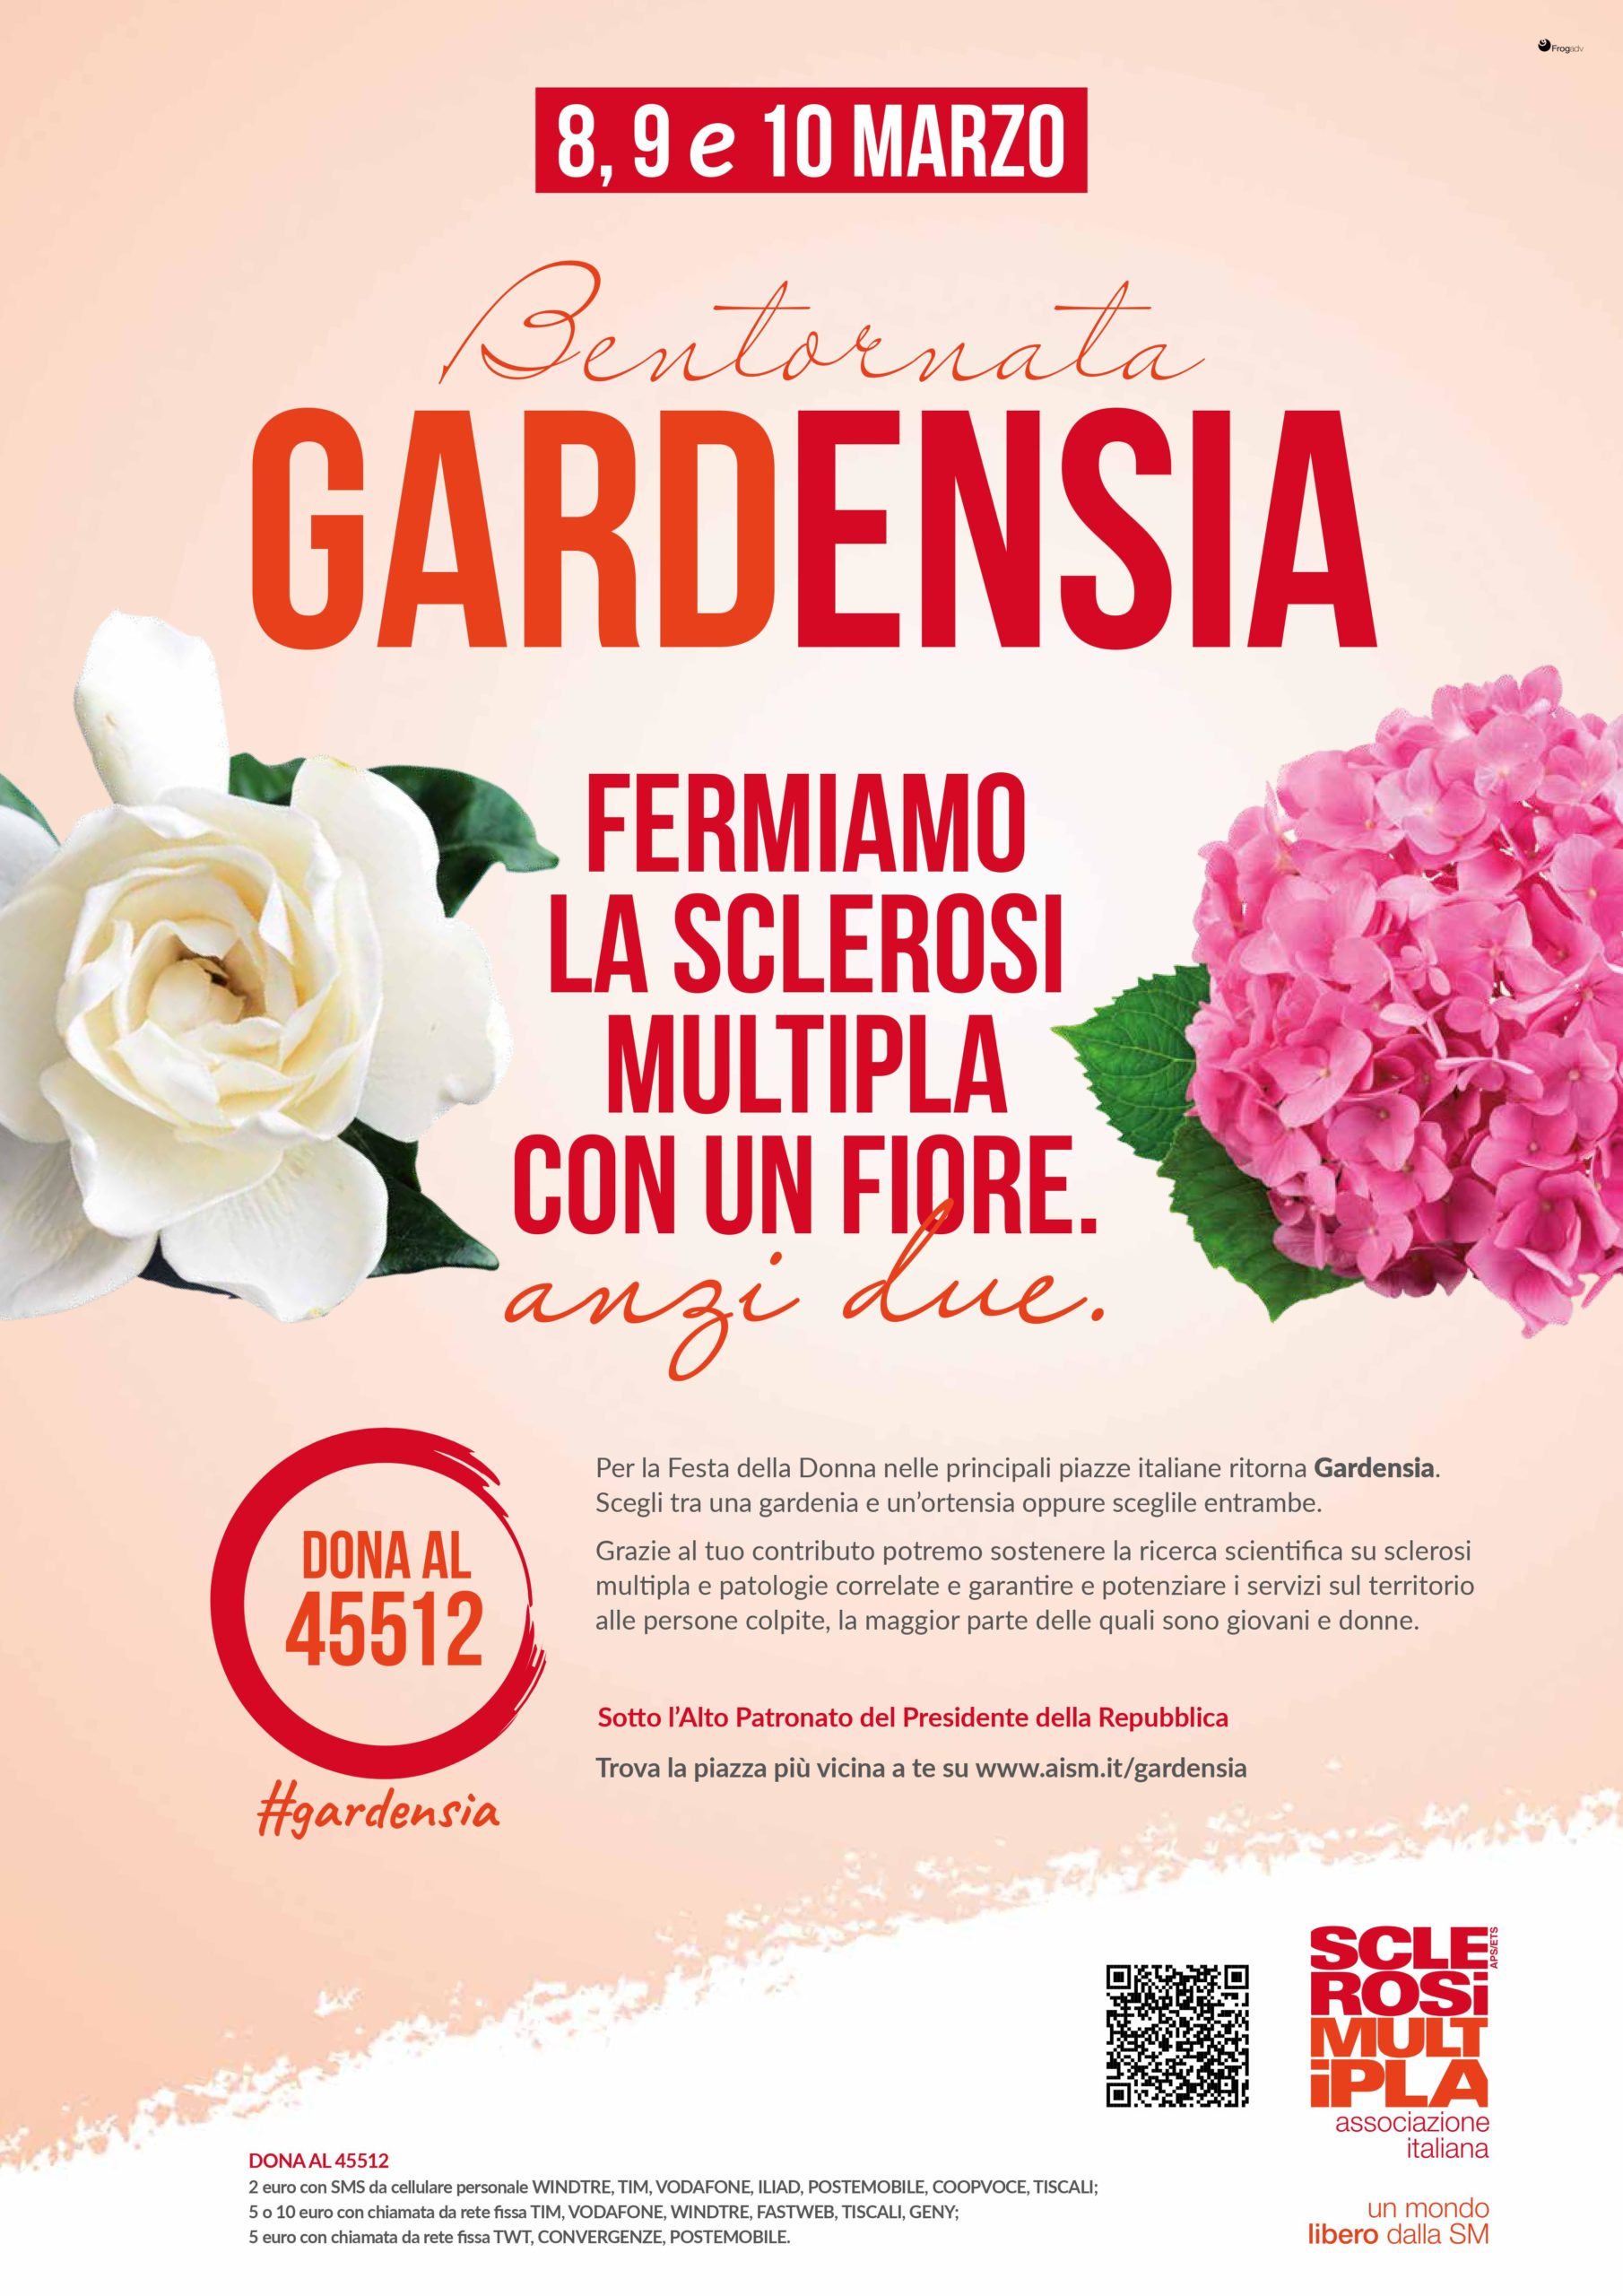 Dall’8 al 10 marzo “Bentornata GARDENSIA” per fermare la sclerosi multipla con un fiore